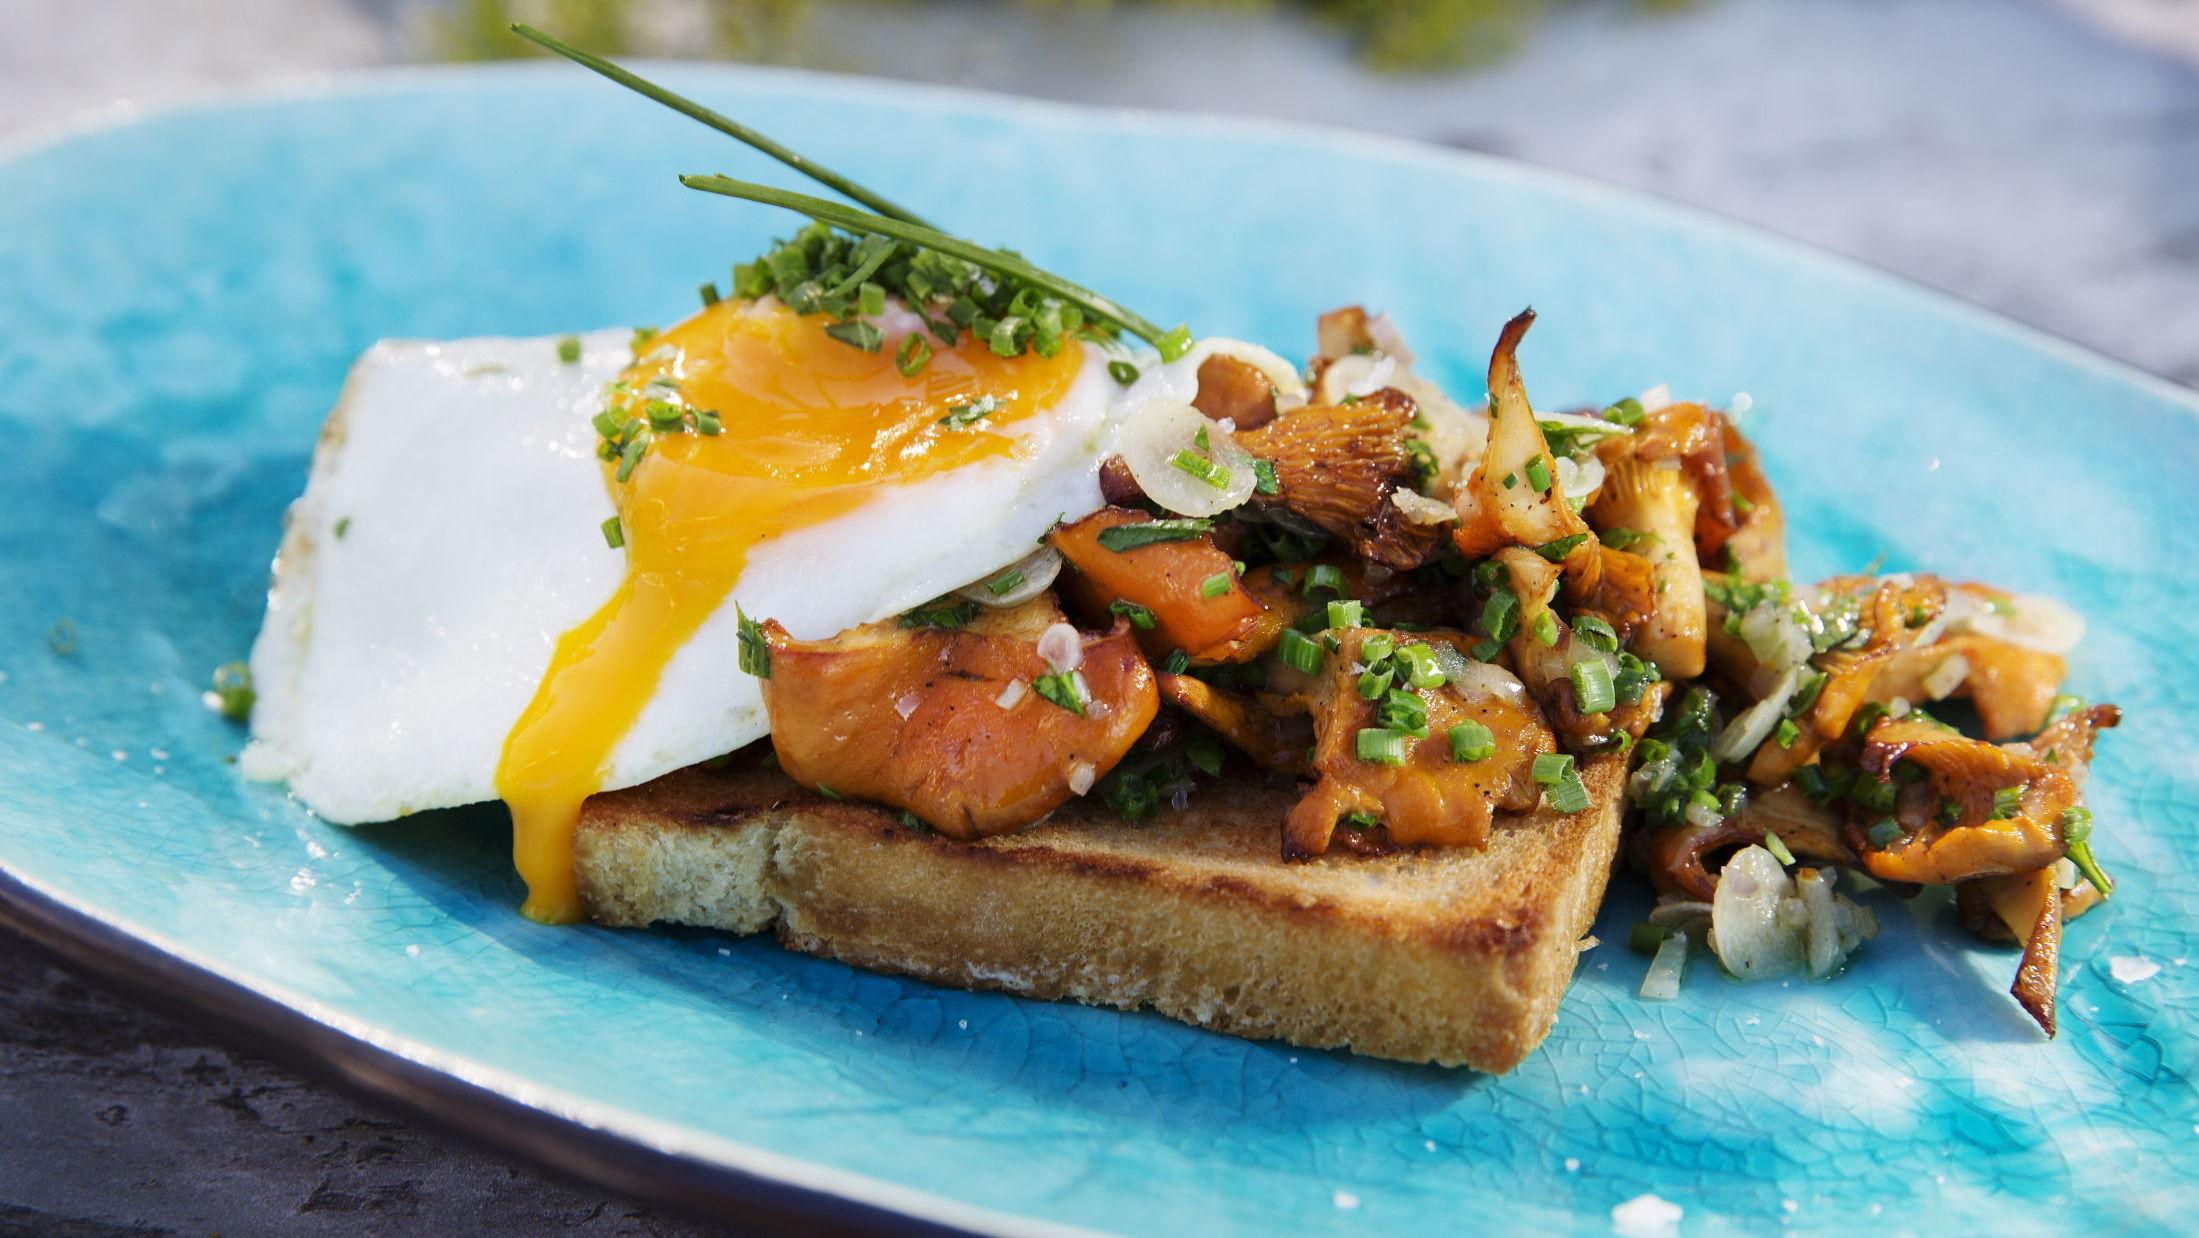 HELT SOPP: Det trenger ikke å være så veldig komplisert - sopp og egg på toast er noe av det beste vi kan få til lunsj. Foto: Magnar Kirknes/VG